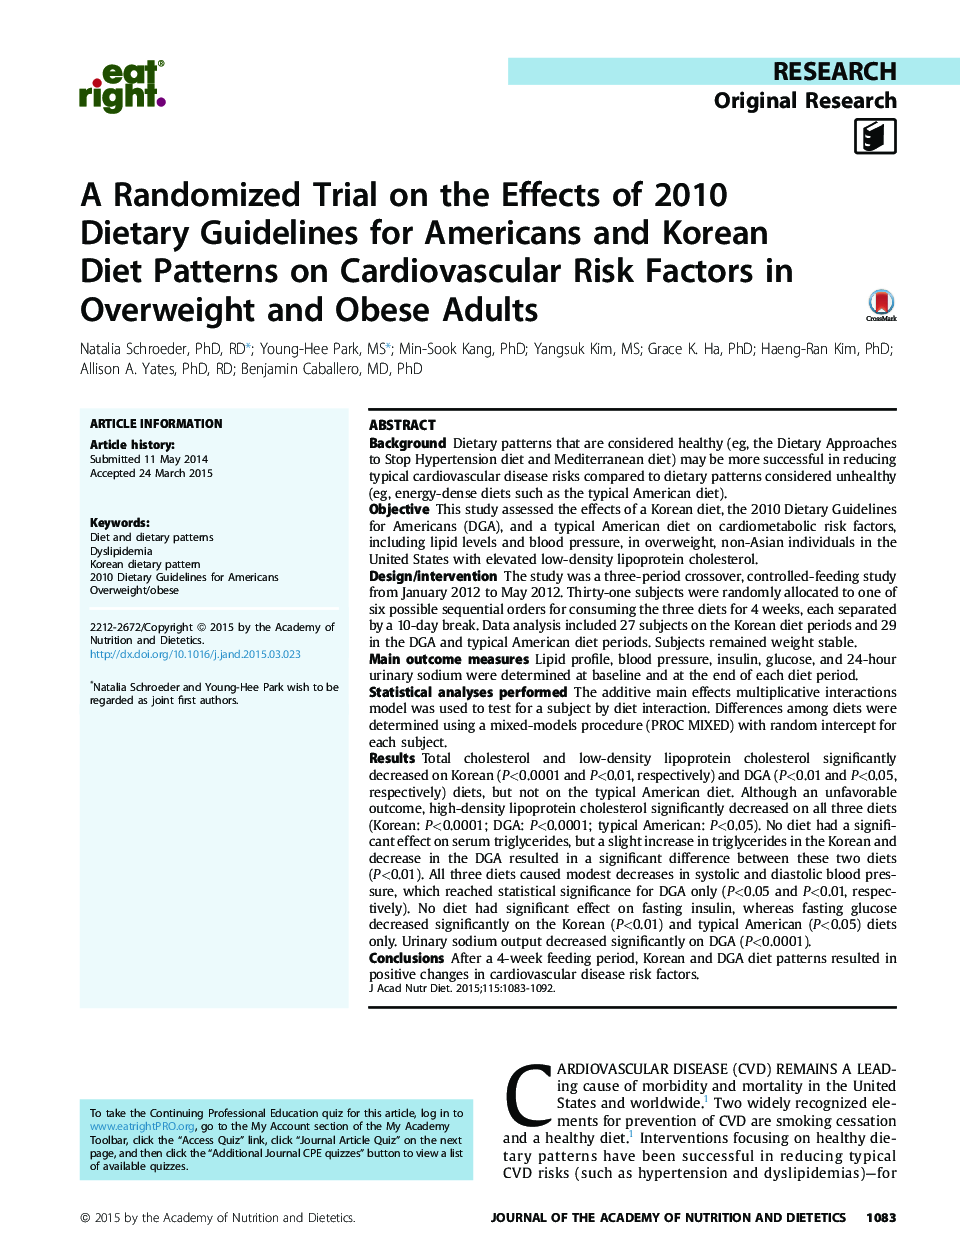 یک آزمایش تصادفی در مورد اثرات دستورالعمل های غذایی سال 2010 برای آمریکایی ها و الگوهای رژیم غذایی کره ای بر عوامل خطر بیماری قلبی عروقی در بزرگسالان دارای اضافه وزن و چاقی 